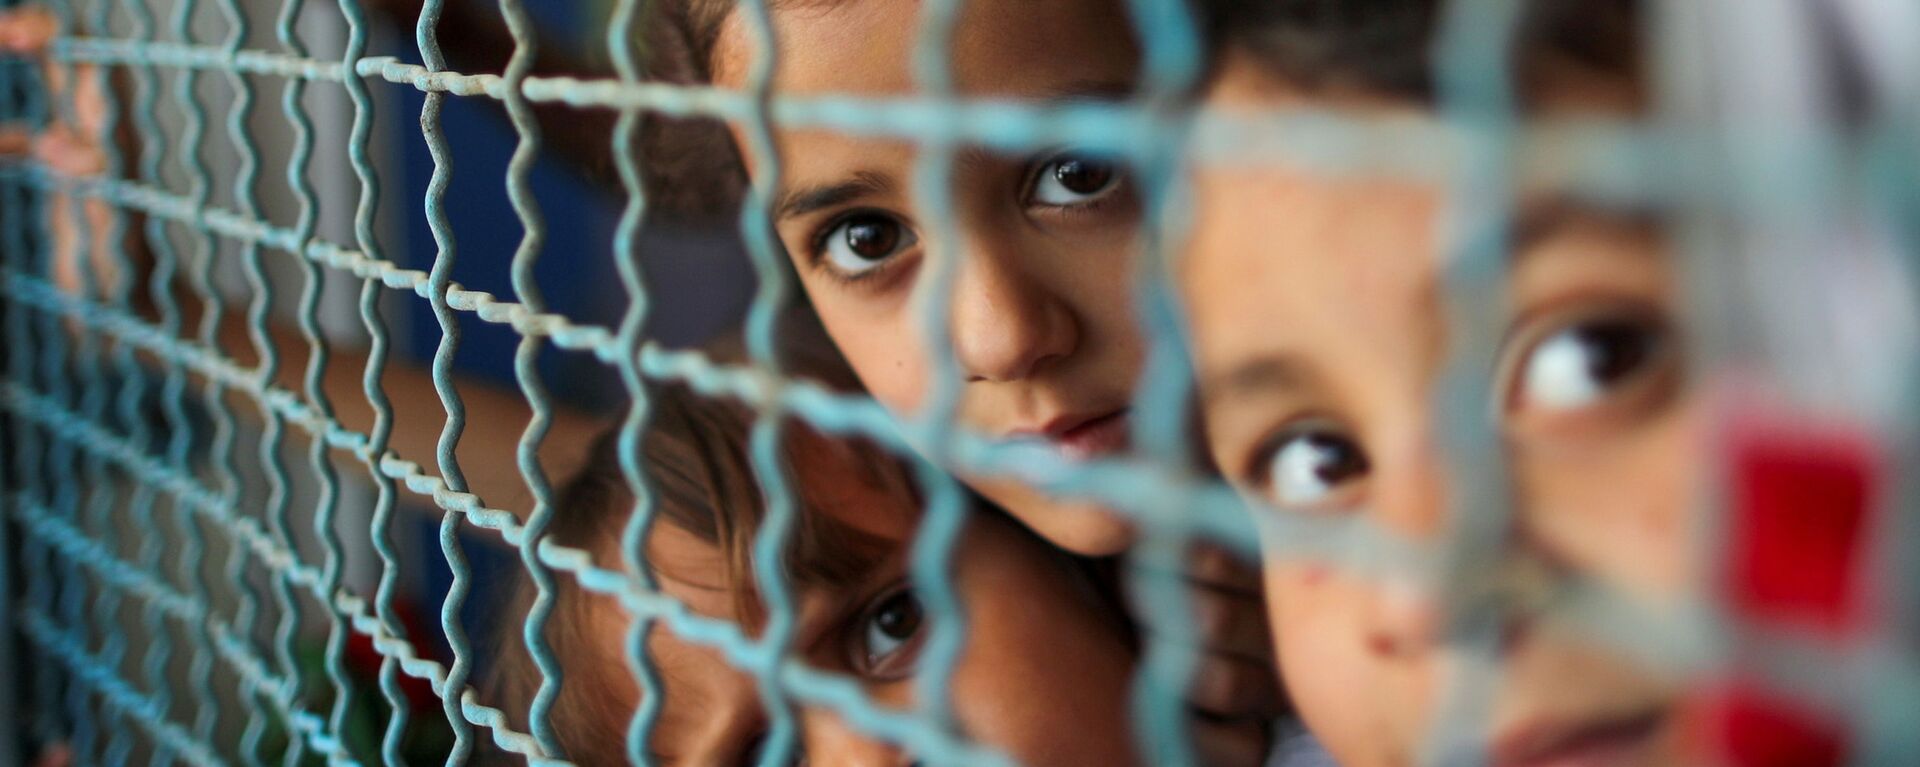 أطفال ينظرون من نافذة مدرسة الأنروا. يذكر أنه نزح ما يقرب 34 ألف من أهالي قطاع غزة إلى مدراس الأونروا بعد قصف الطيران الحربي الإسرائيلي منازلهم، فلسطين بتاريخ 18 مايو 2021 - سبوتنيك عربي, 1920, 23.05.2021